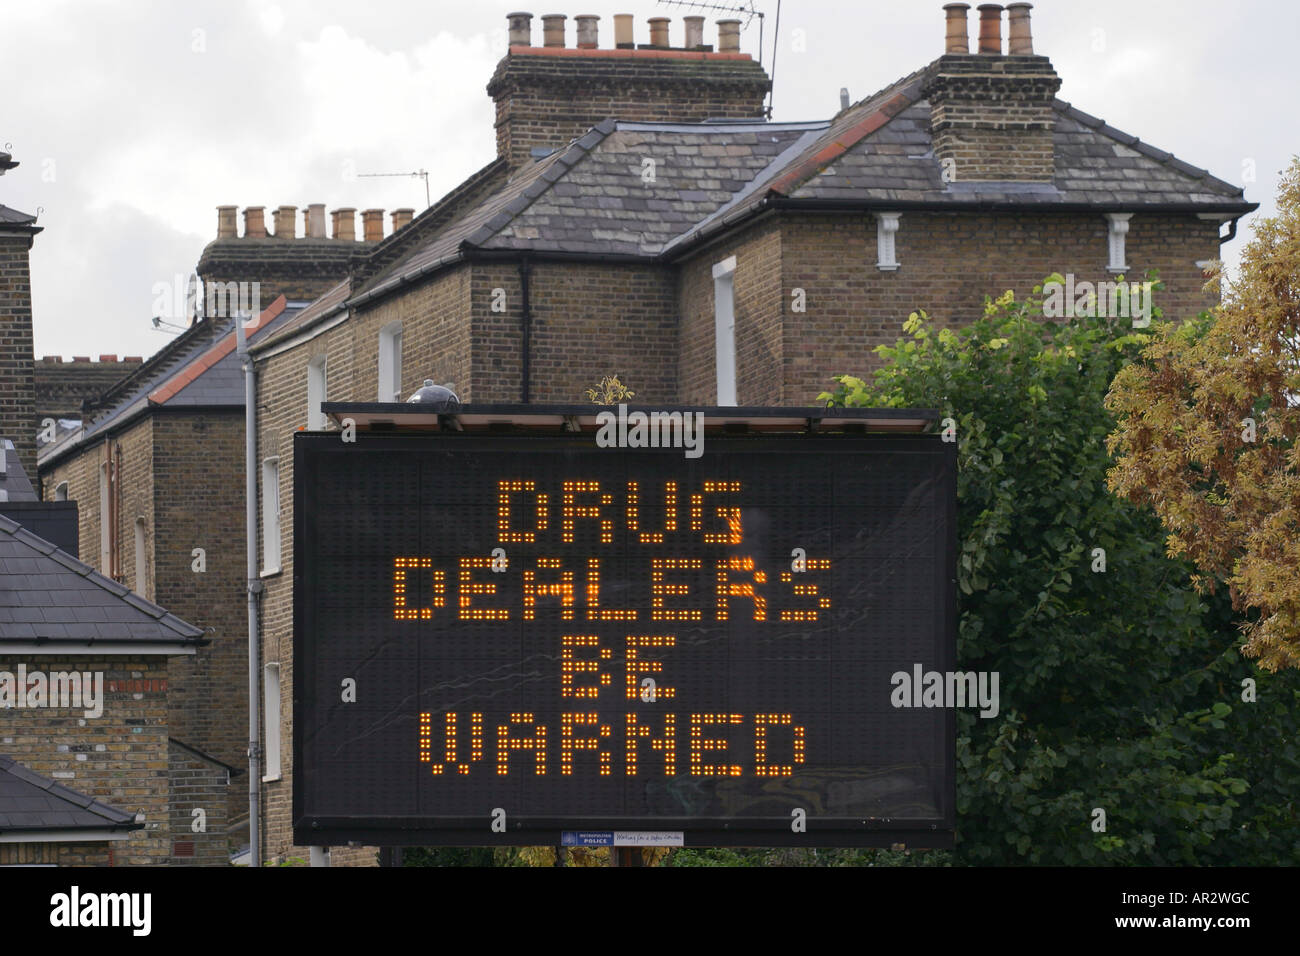 Polizia segno di avvertimento, Finsbury Park, Londra, Regno Unito, relative ai trafficanti di droga che lavorano nella zona. 2006. Foto Stock